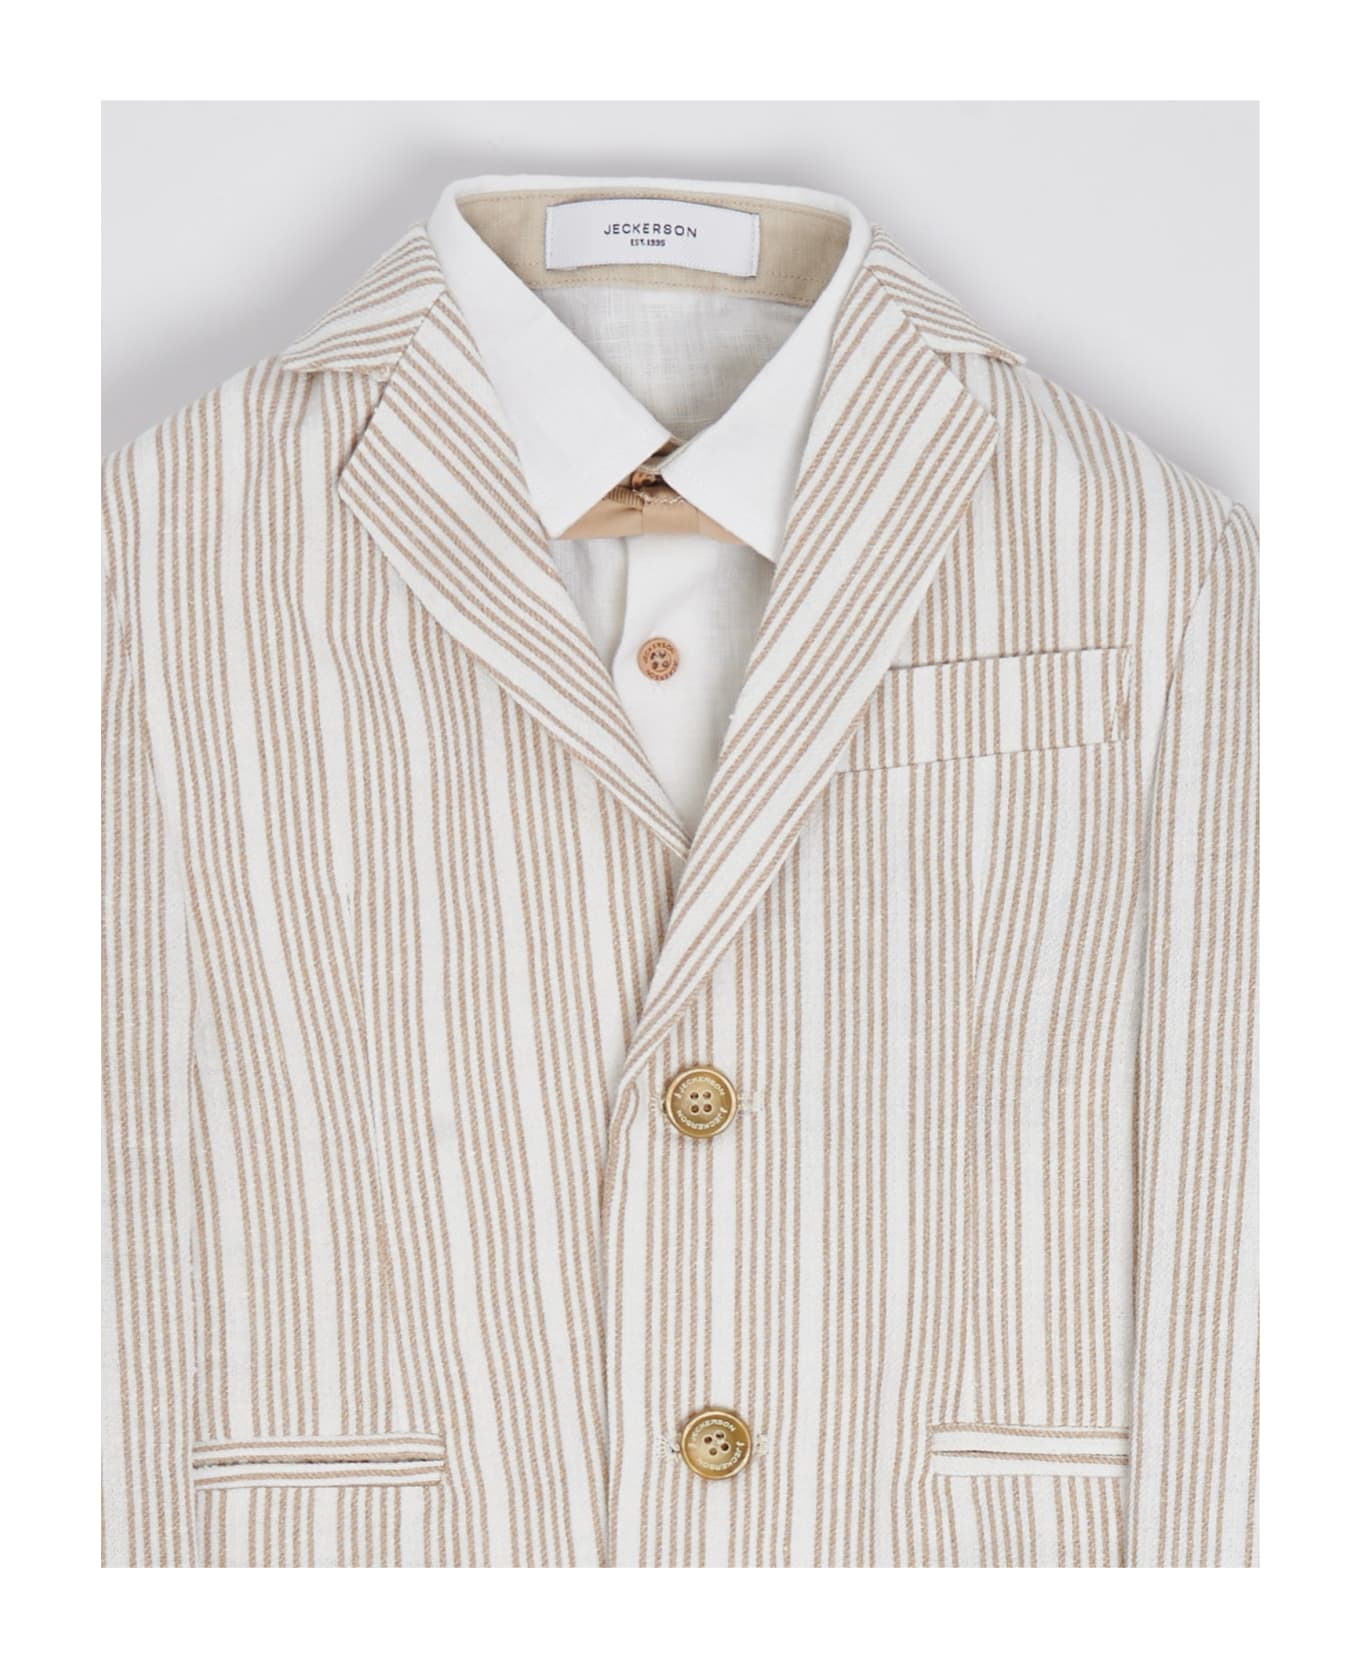 Jeckerson Suits Suit (tailleur) - BIANCO-BEIGE ウェア